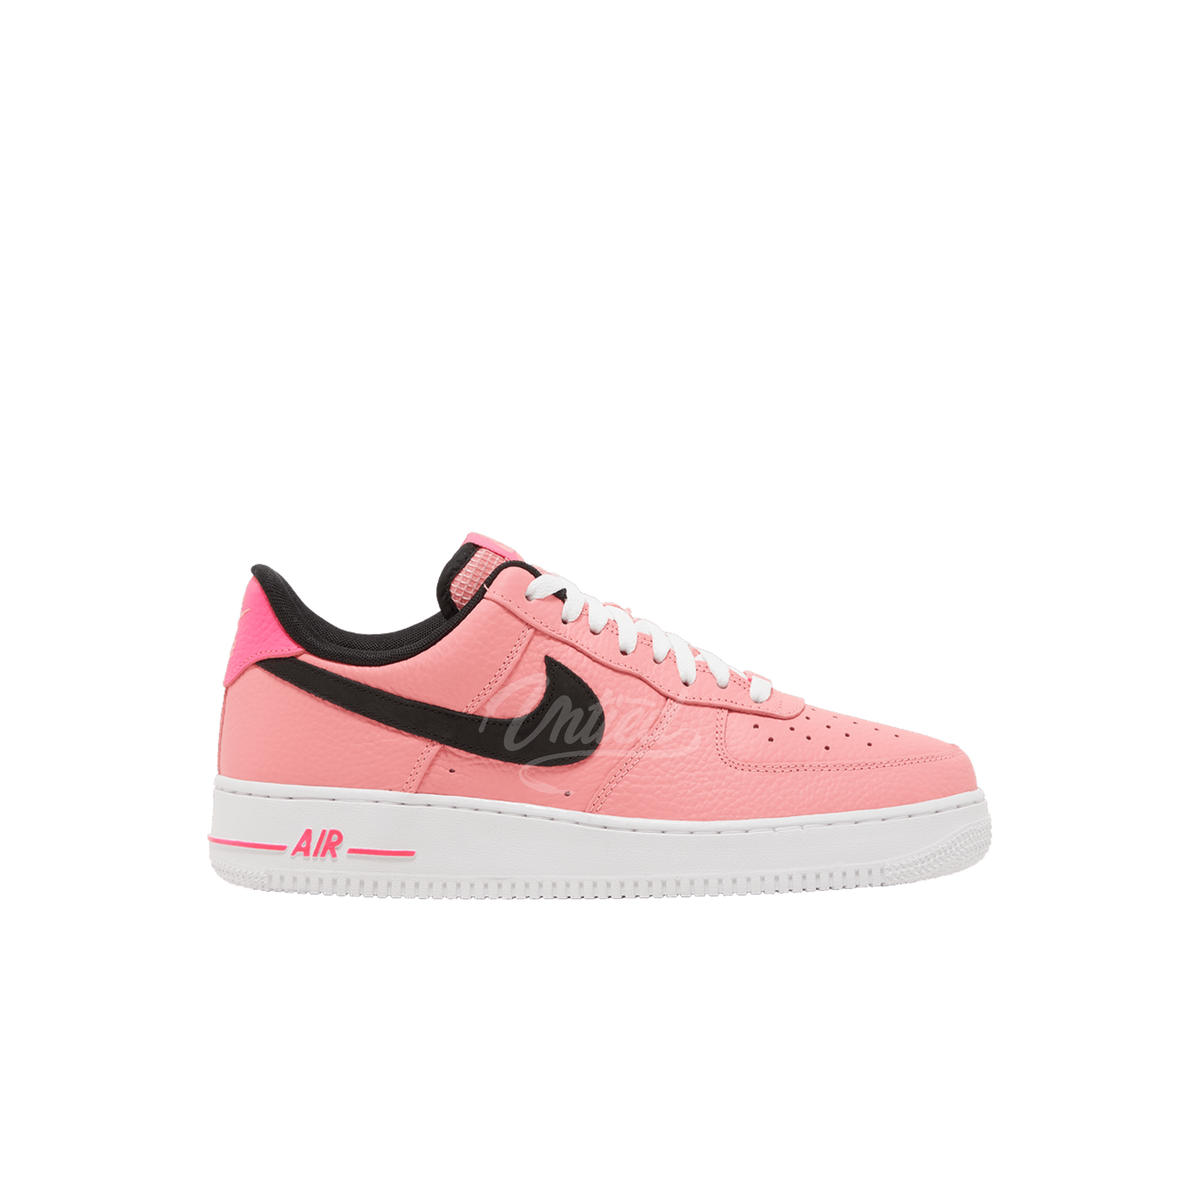 Air Force 1 "Pink Glaze"